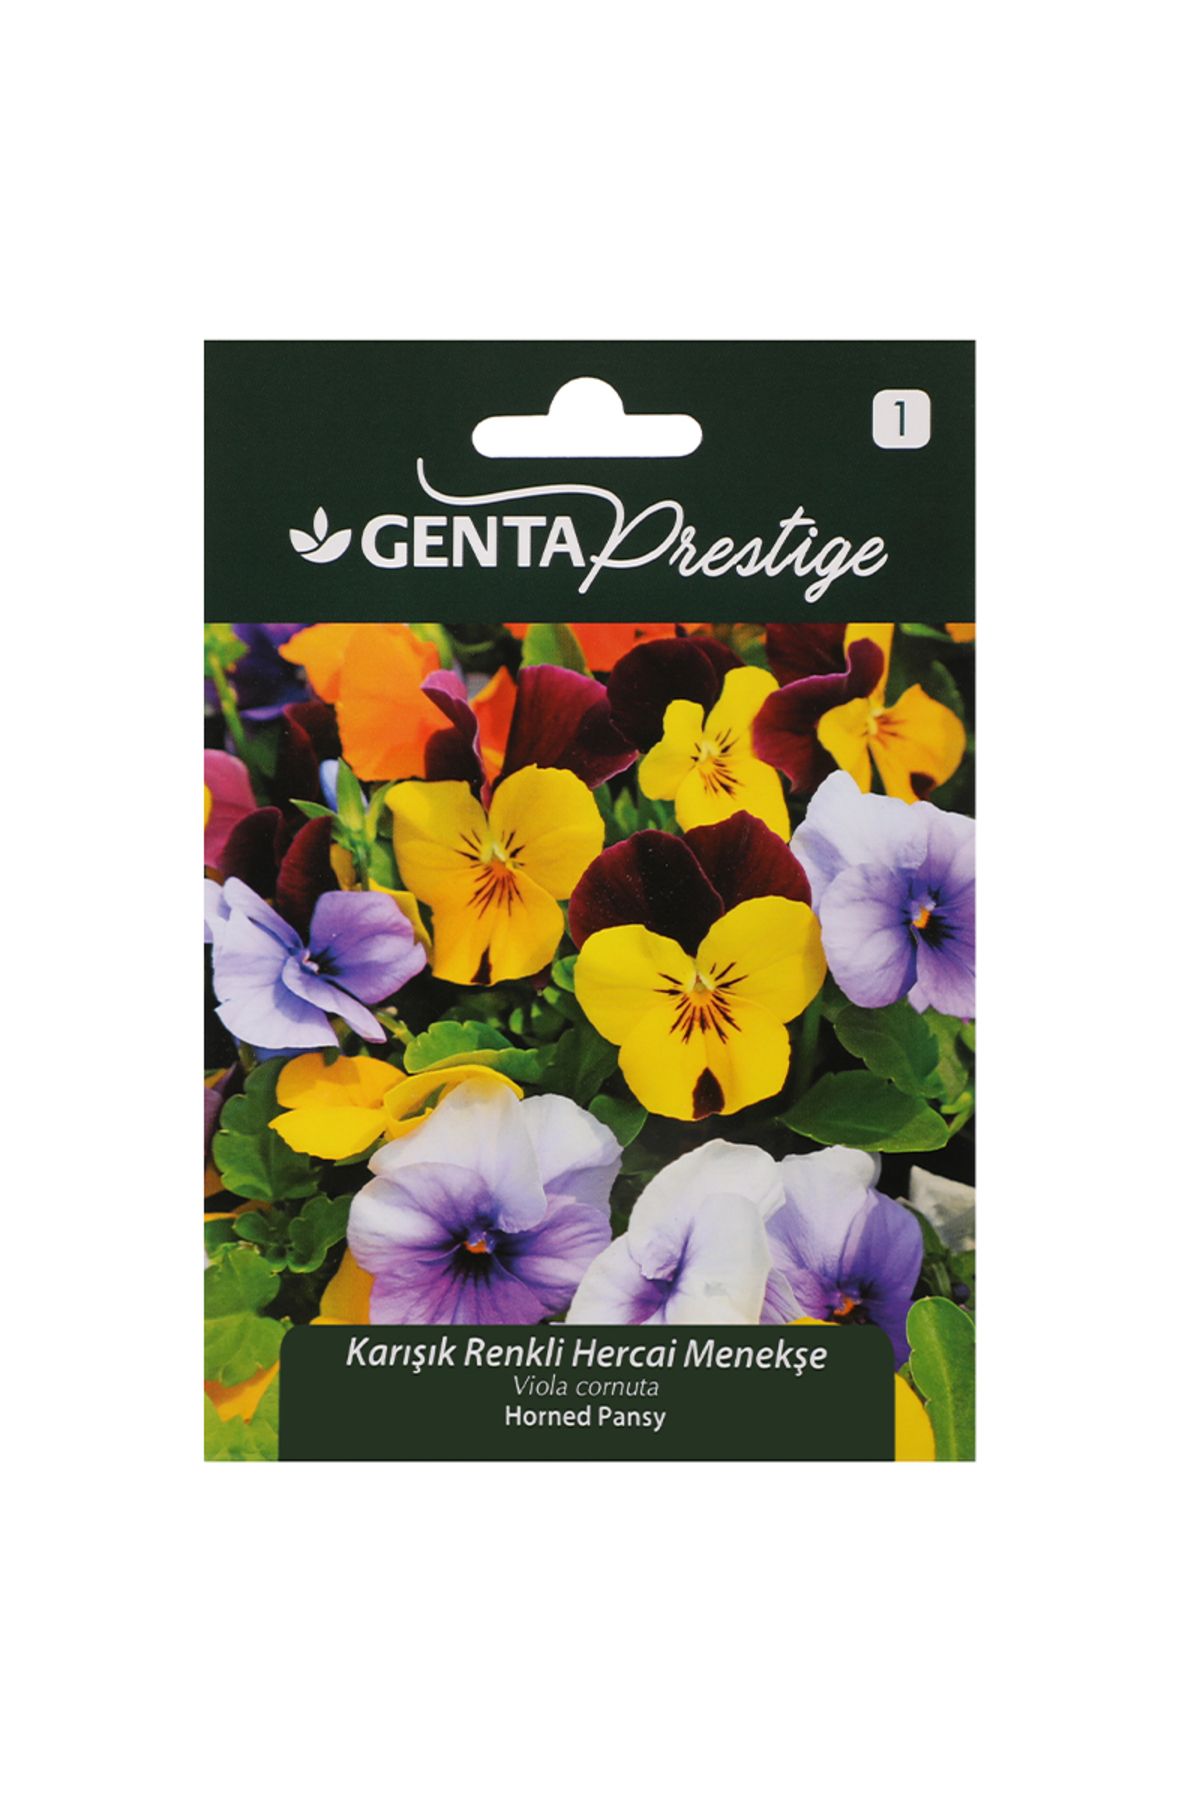 Genta Prestige Çiçek Tohumu Karışık Renkli Hercai Menekşe